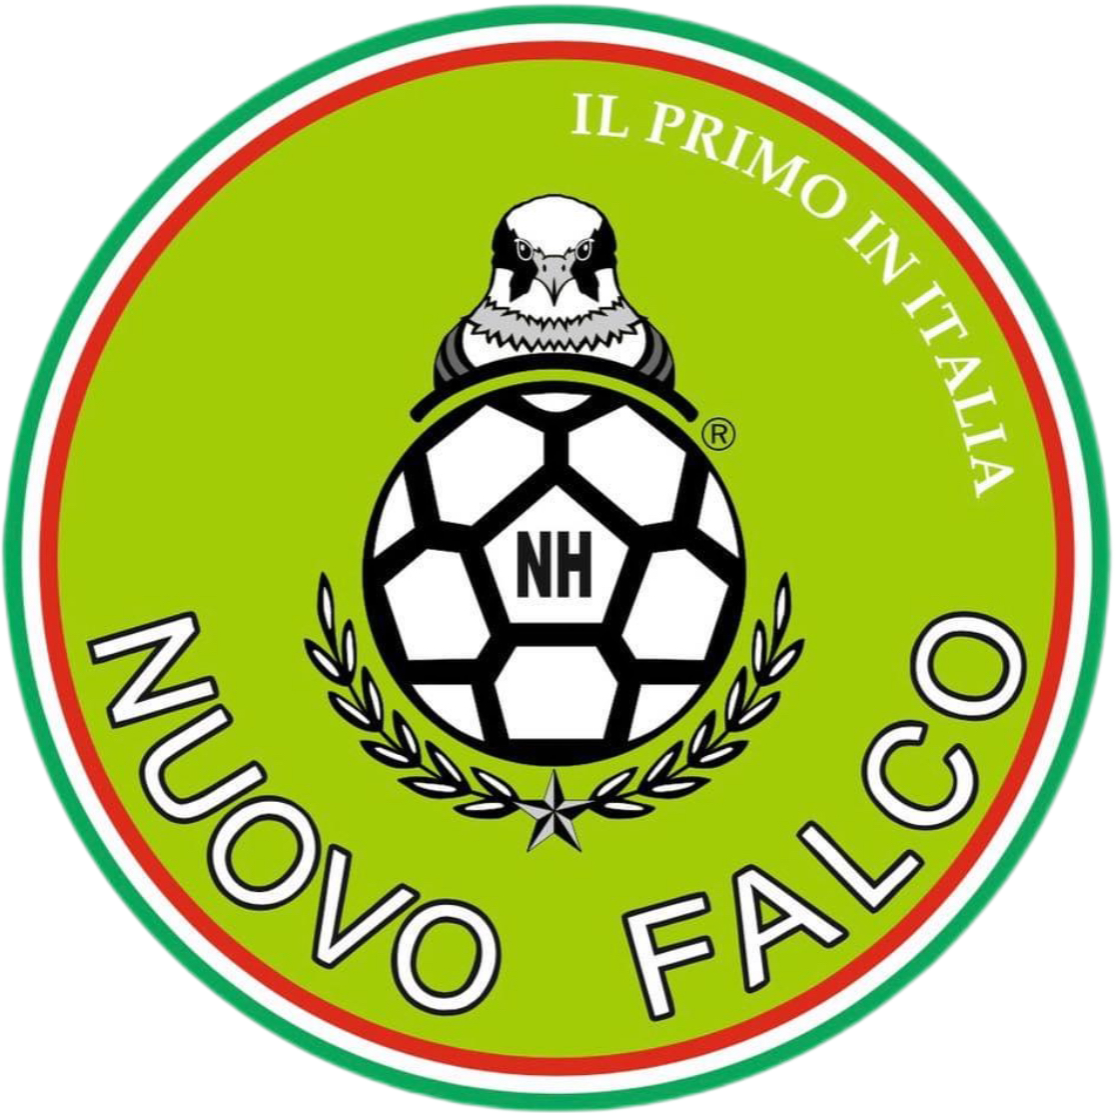 www.nuovofalco.com